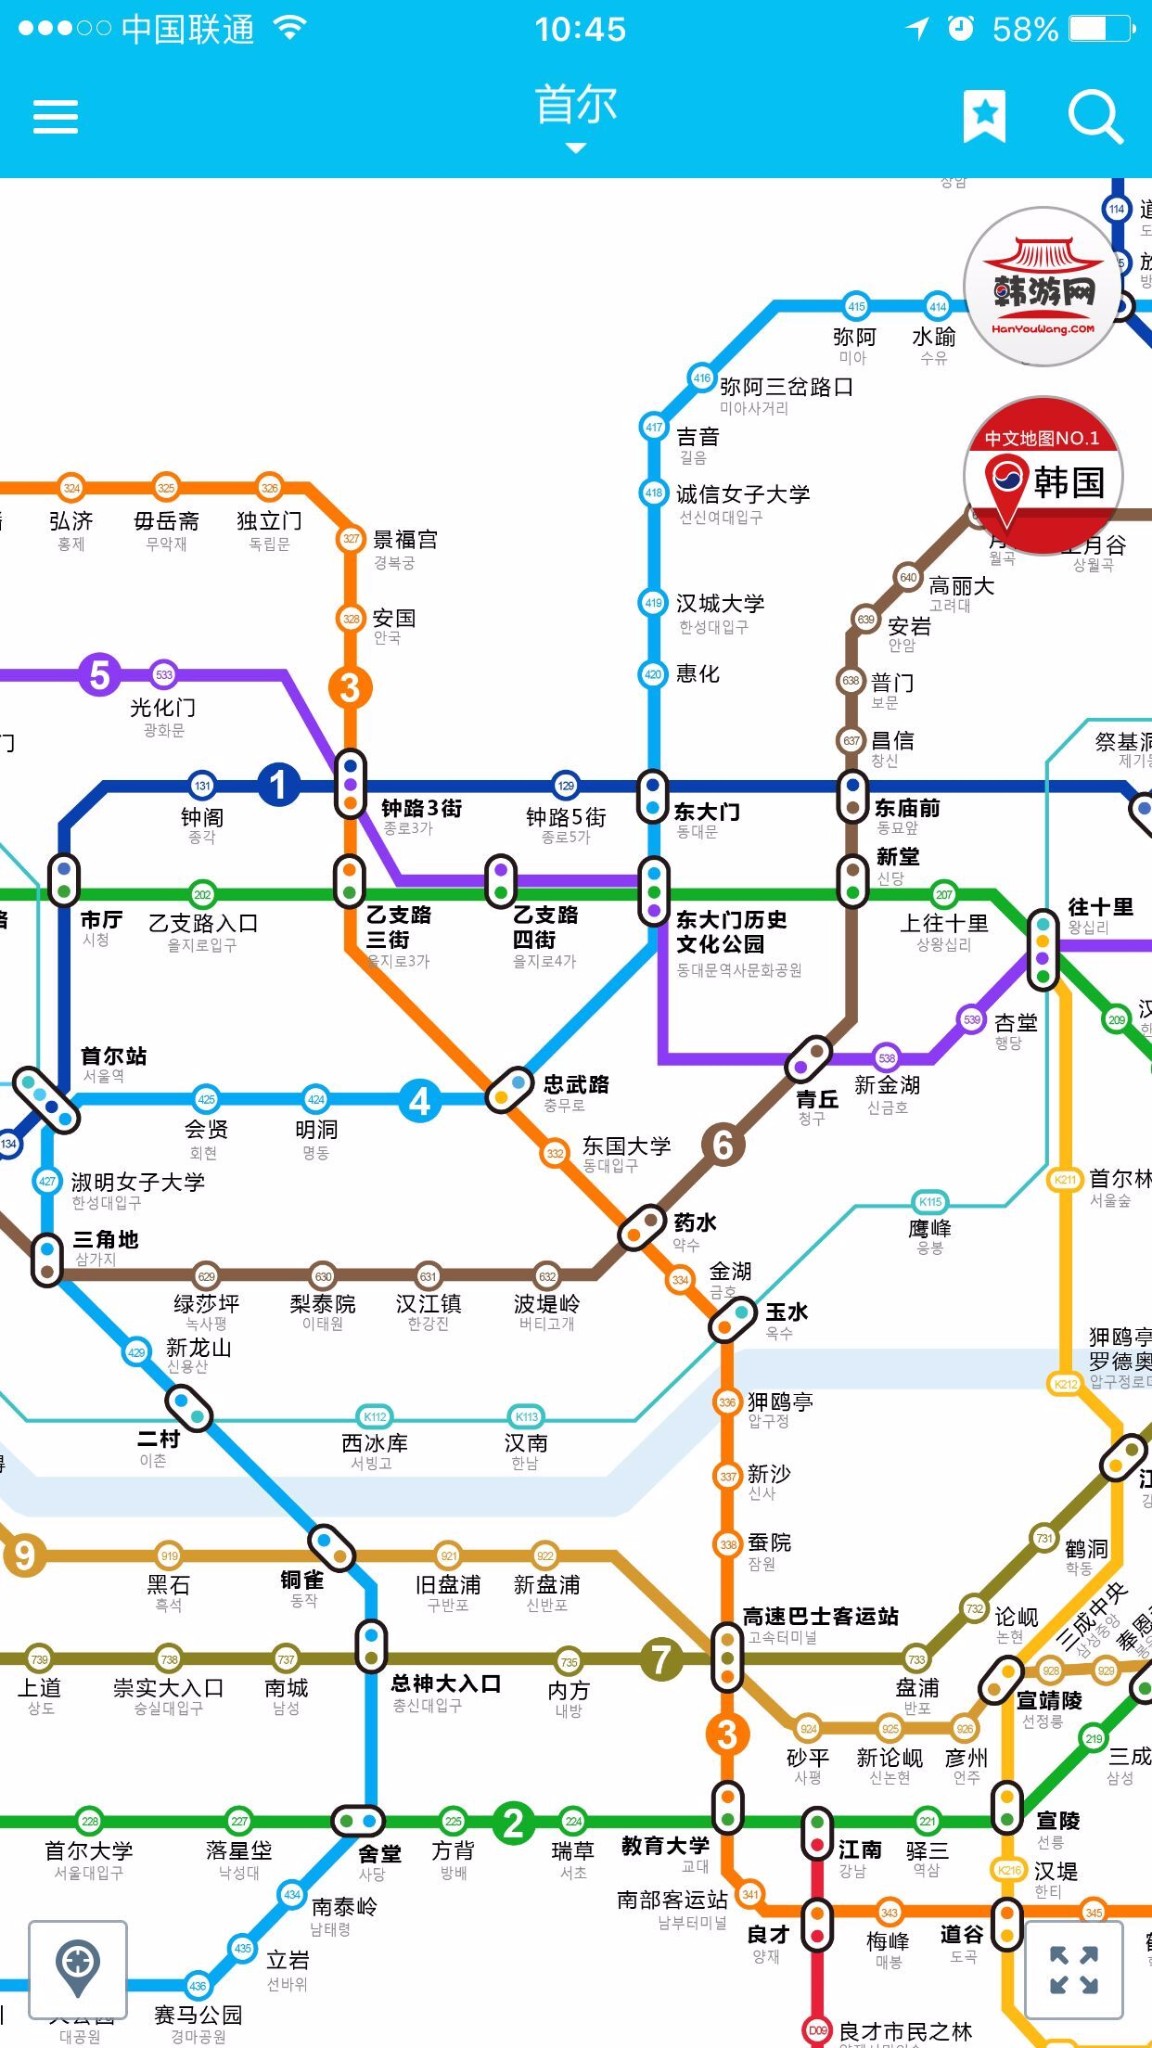 谁有韩国地铁图中韩文字的有详细的关于韩国手册吗